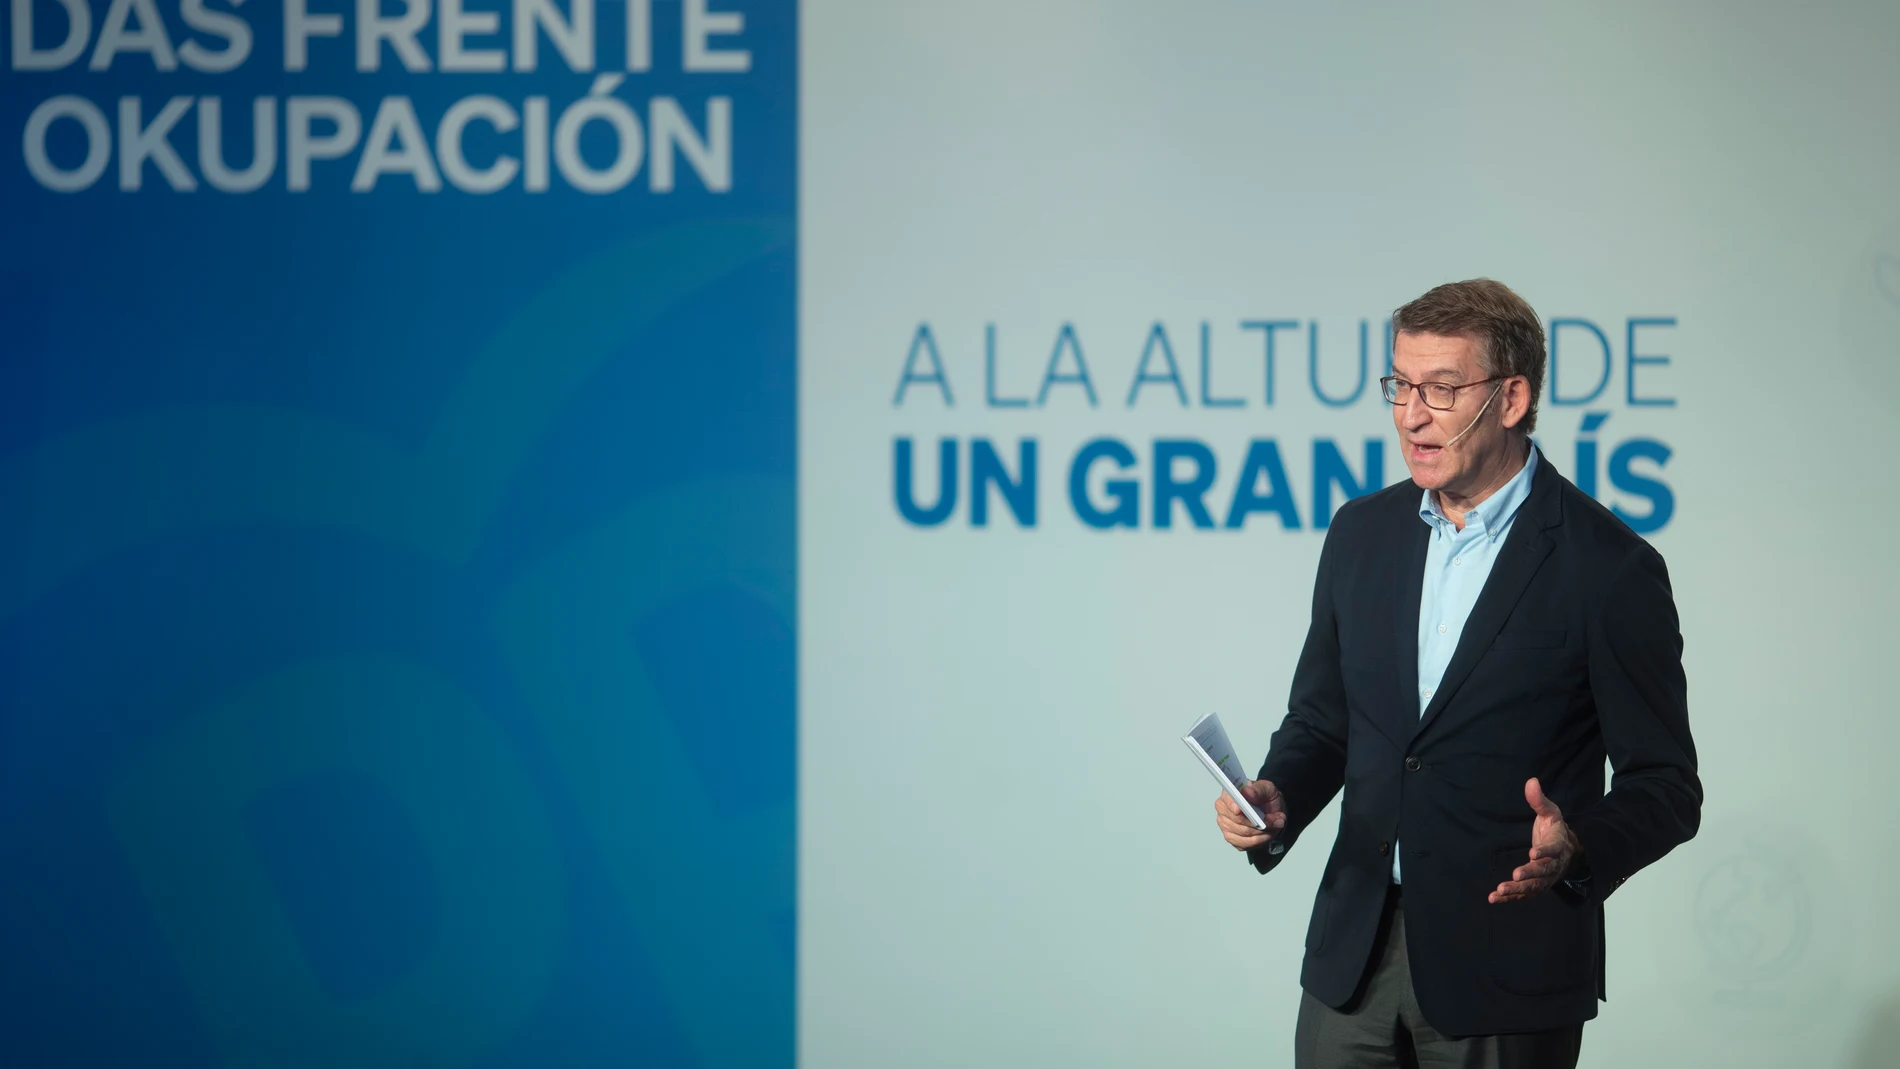 El presidente del PP, Alberto Nuñez Feijóo durante su intervención hoy en Barcelona en la primera de las convenciones sectoriales del partido "Medidas frente a la ocupación, a la altura de un gran país"